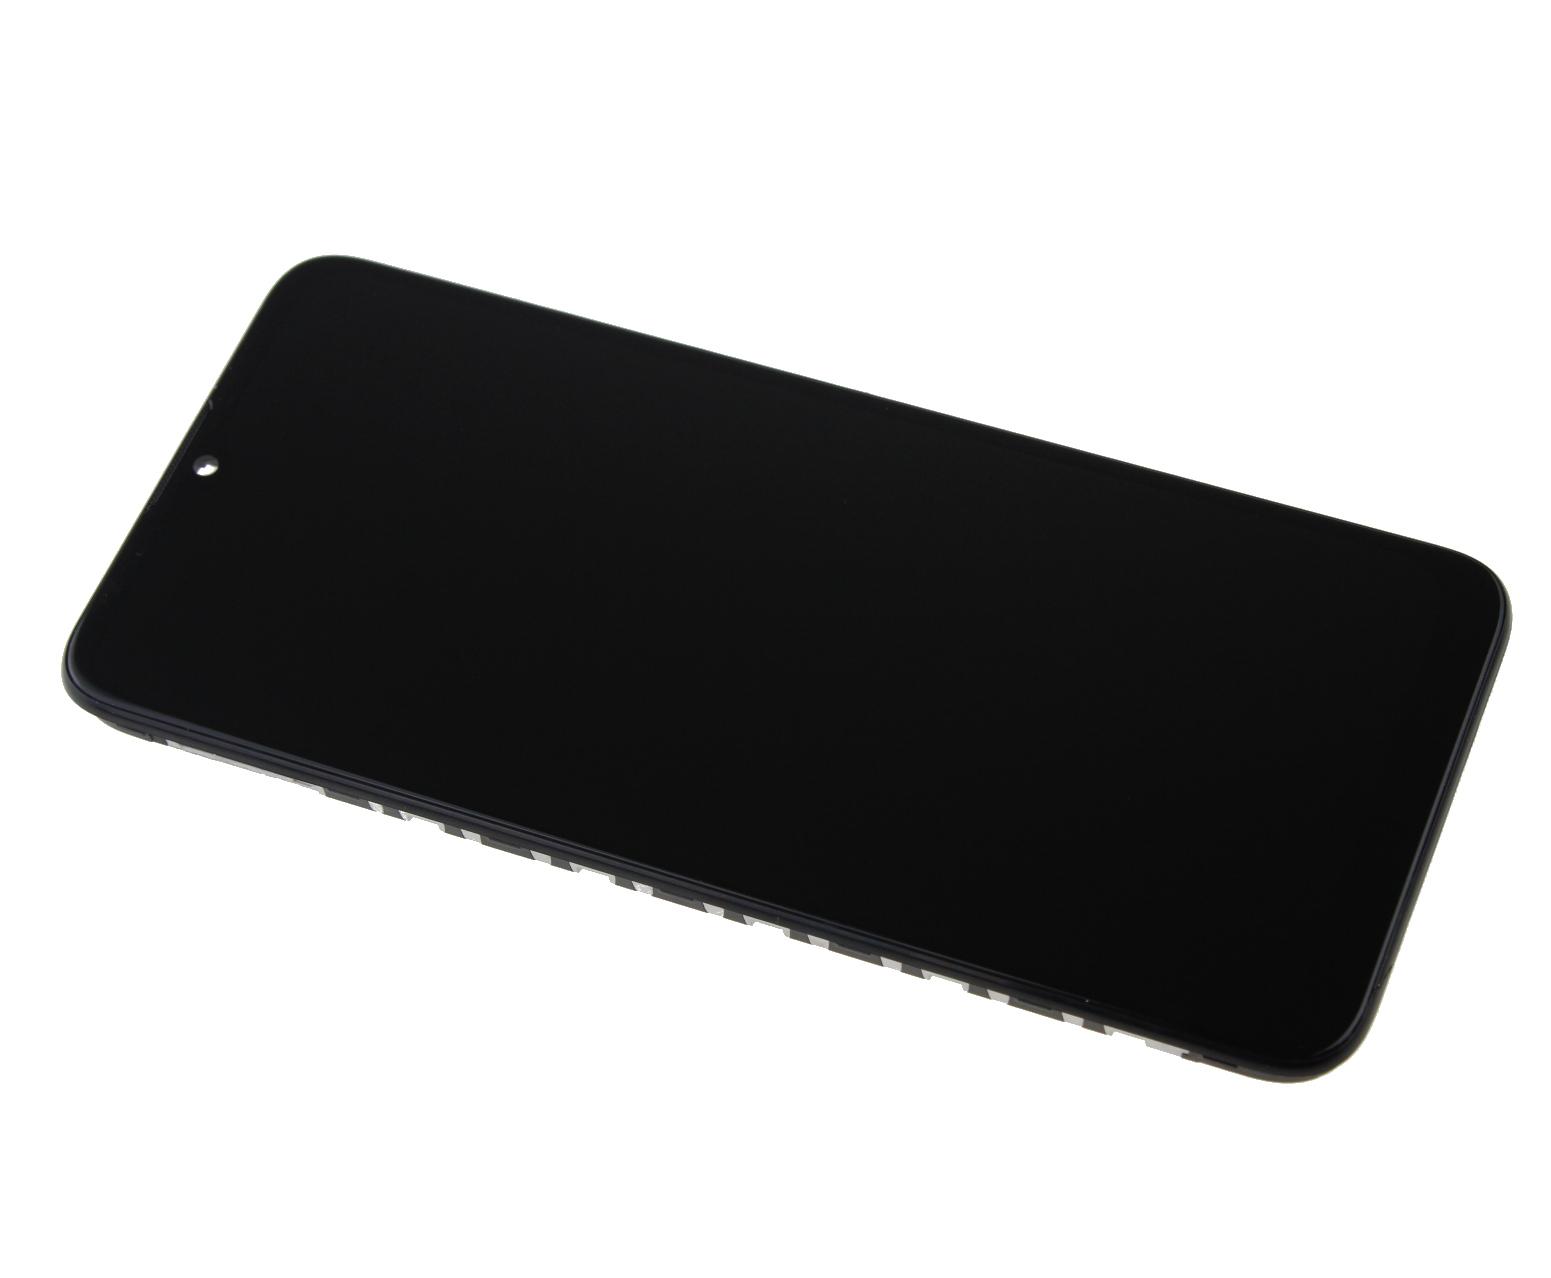 Originál LCD + Dotyková vrstva Motorola E7 Power - Motorola E7i Power XT2097 černá - repasovaný díl vyměněné sklíčko